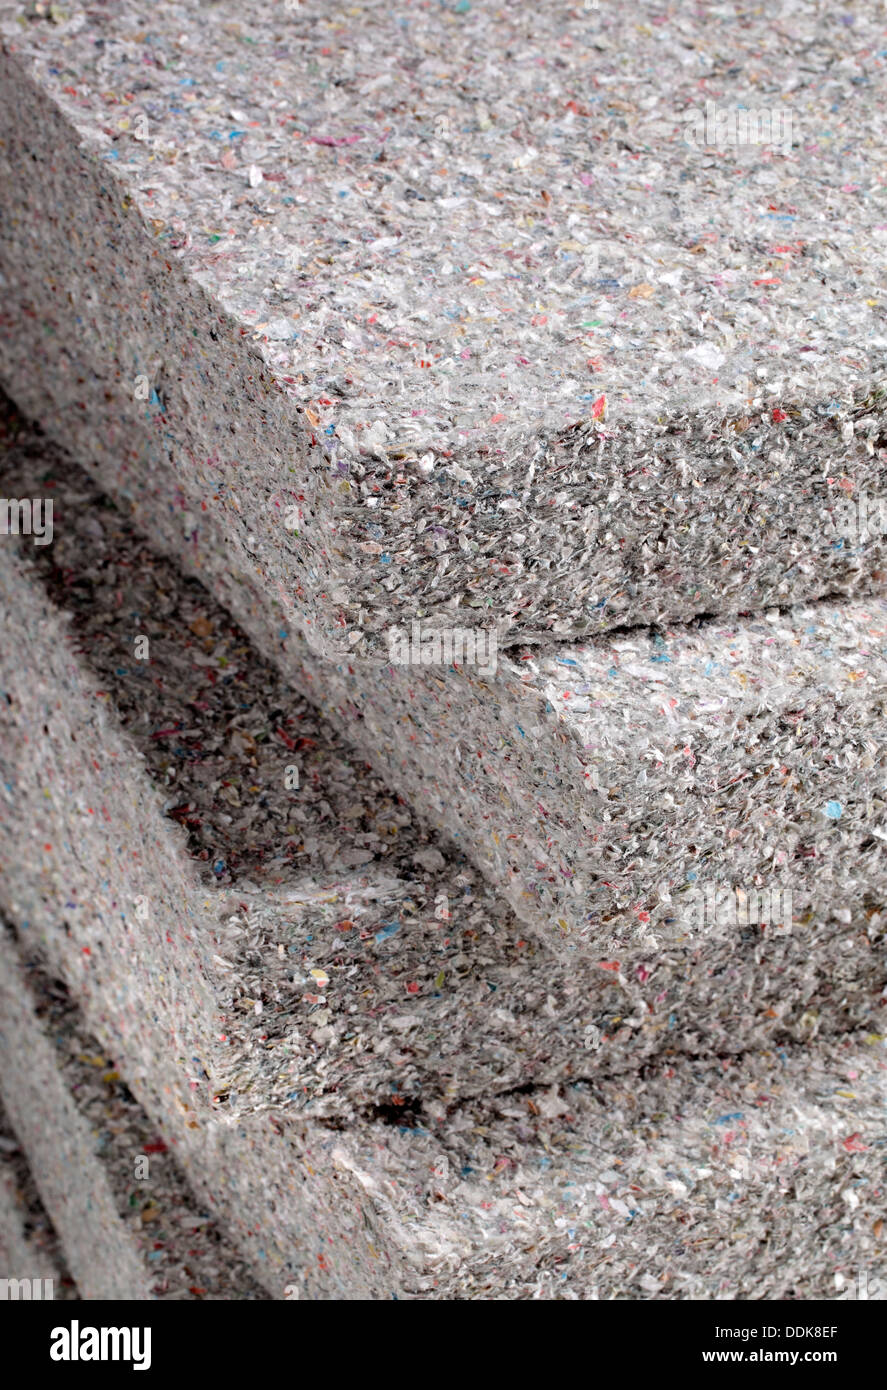 Pile de panneaux isolants cellulosiques batt en papier journal recyclé, utilisé comme isolant thermique du bâtiment. Banque D'Images